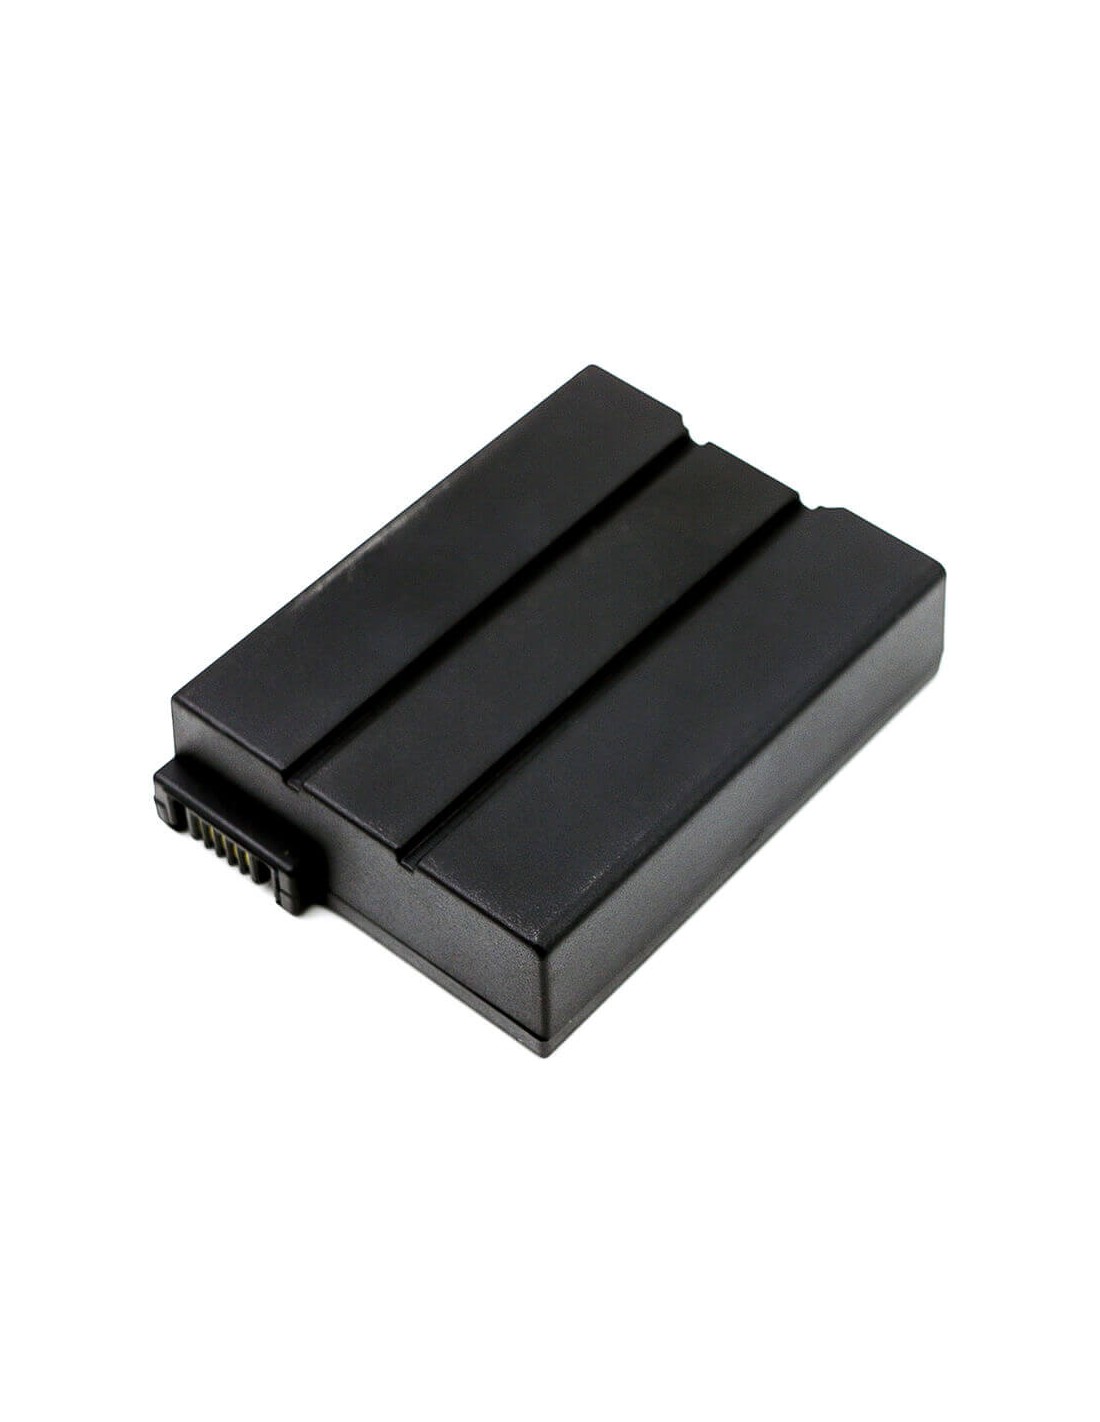 Battery for Cisco, Dpq3212, Dpq3925 10.8V, 3400mAh - 36.72Wh